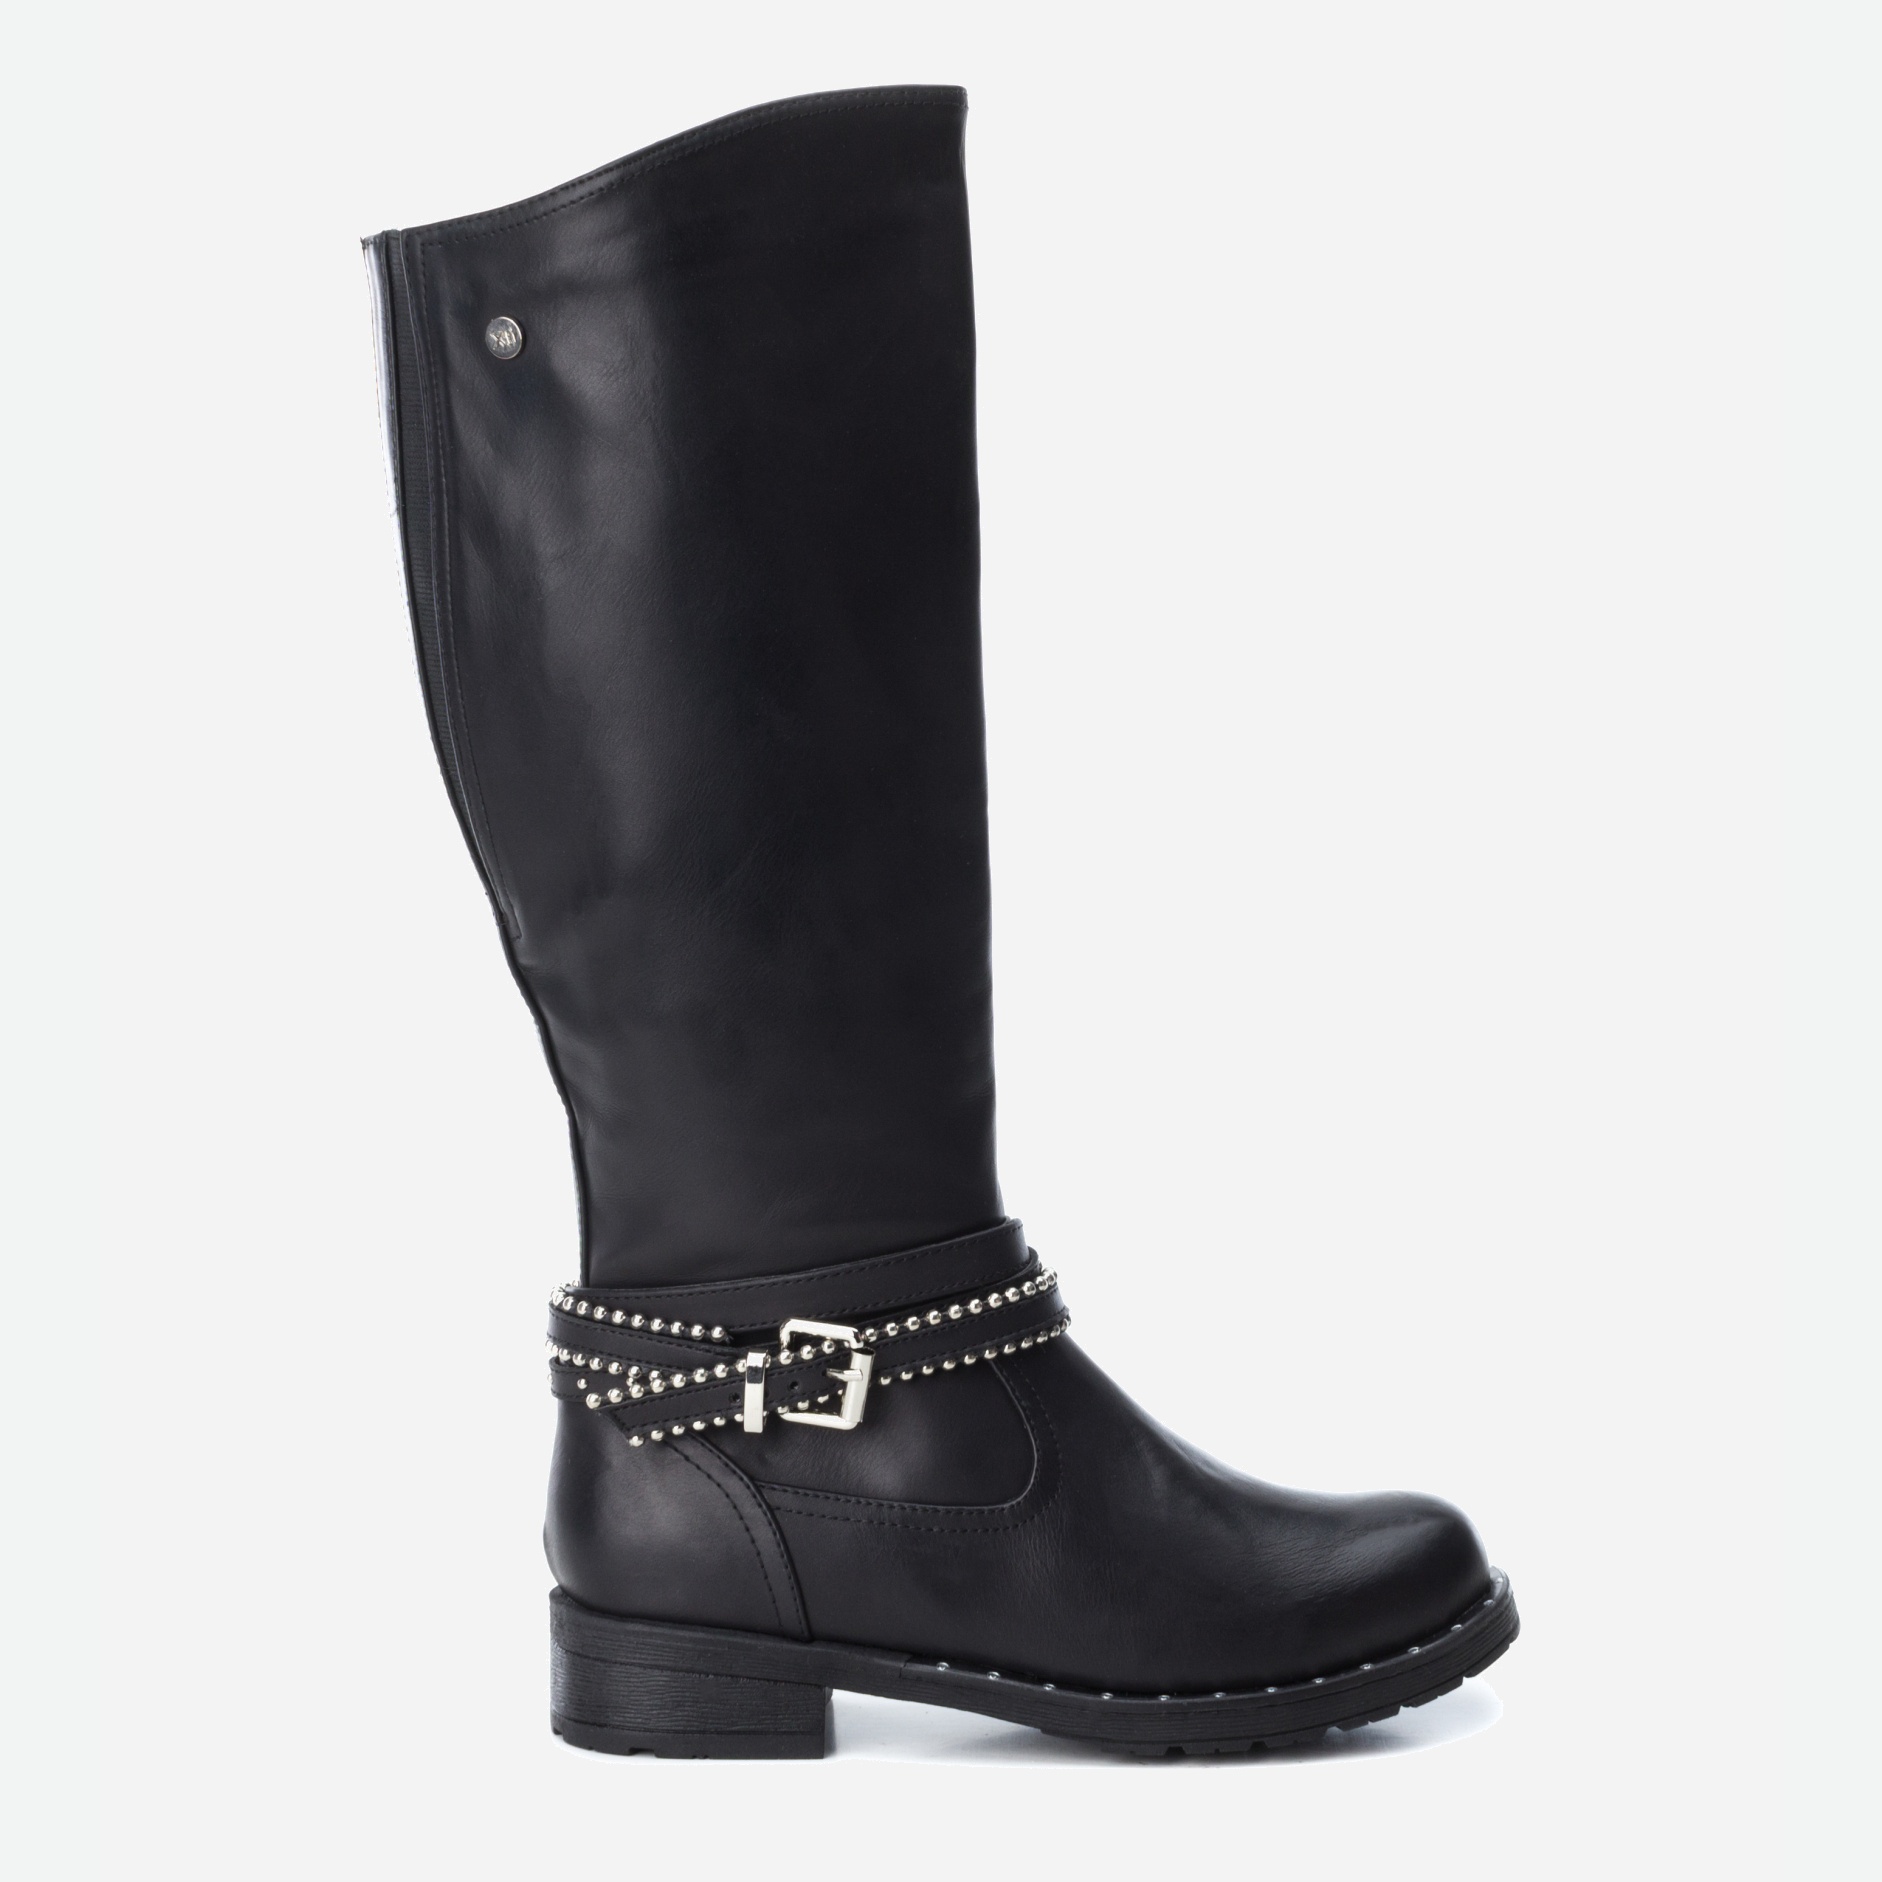 Акция на Сапоги XTI Pu Ladies Boots 48496-1 38 24 см Черные (8434739180405) от Rozetka UA